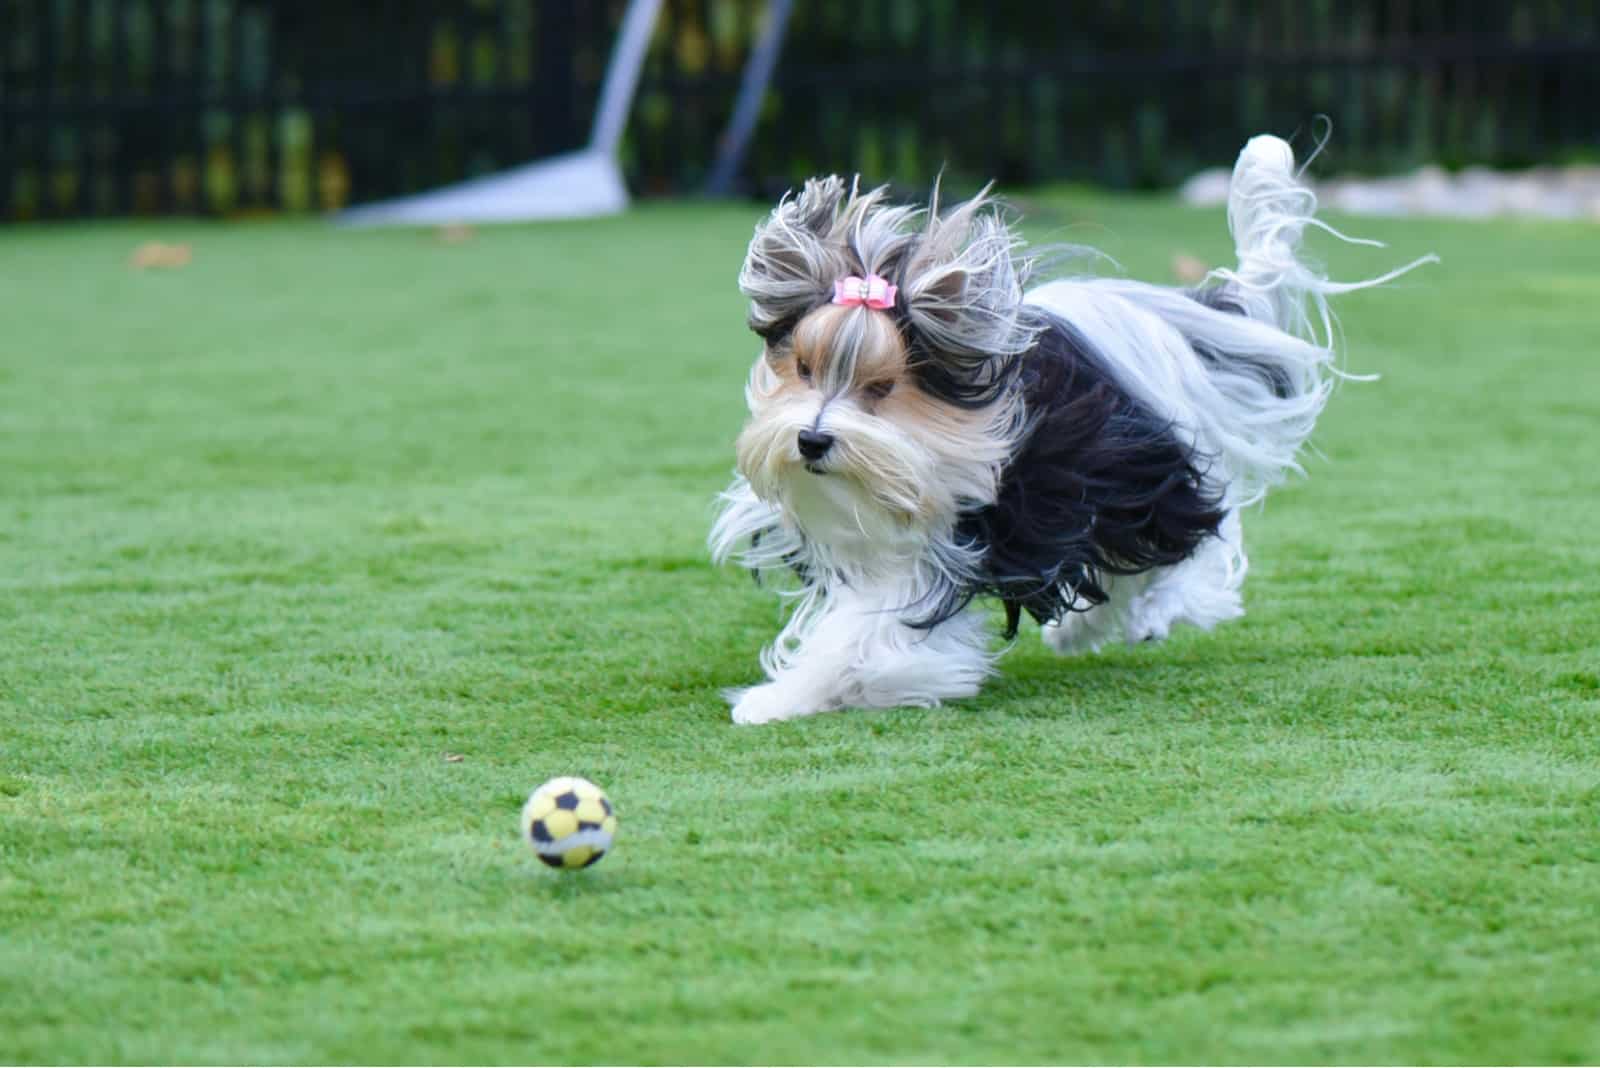 Biewer Yorkshire Terrier running after a yellow soccer ball 